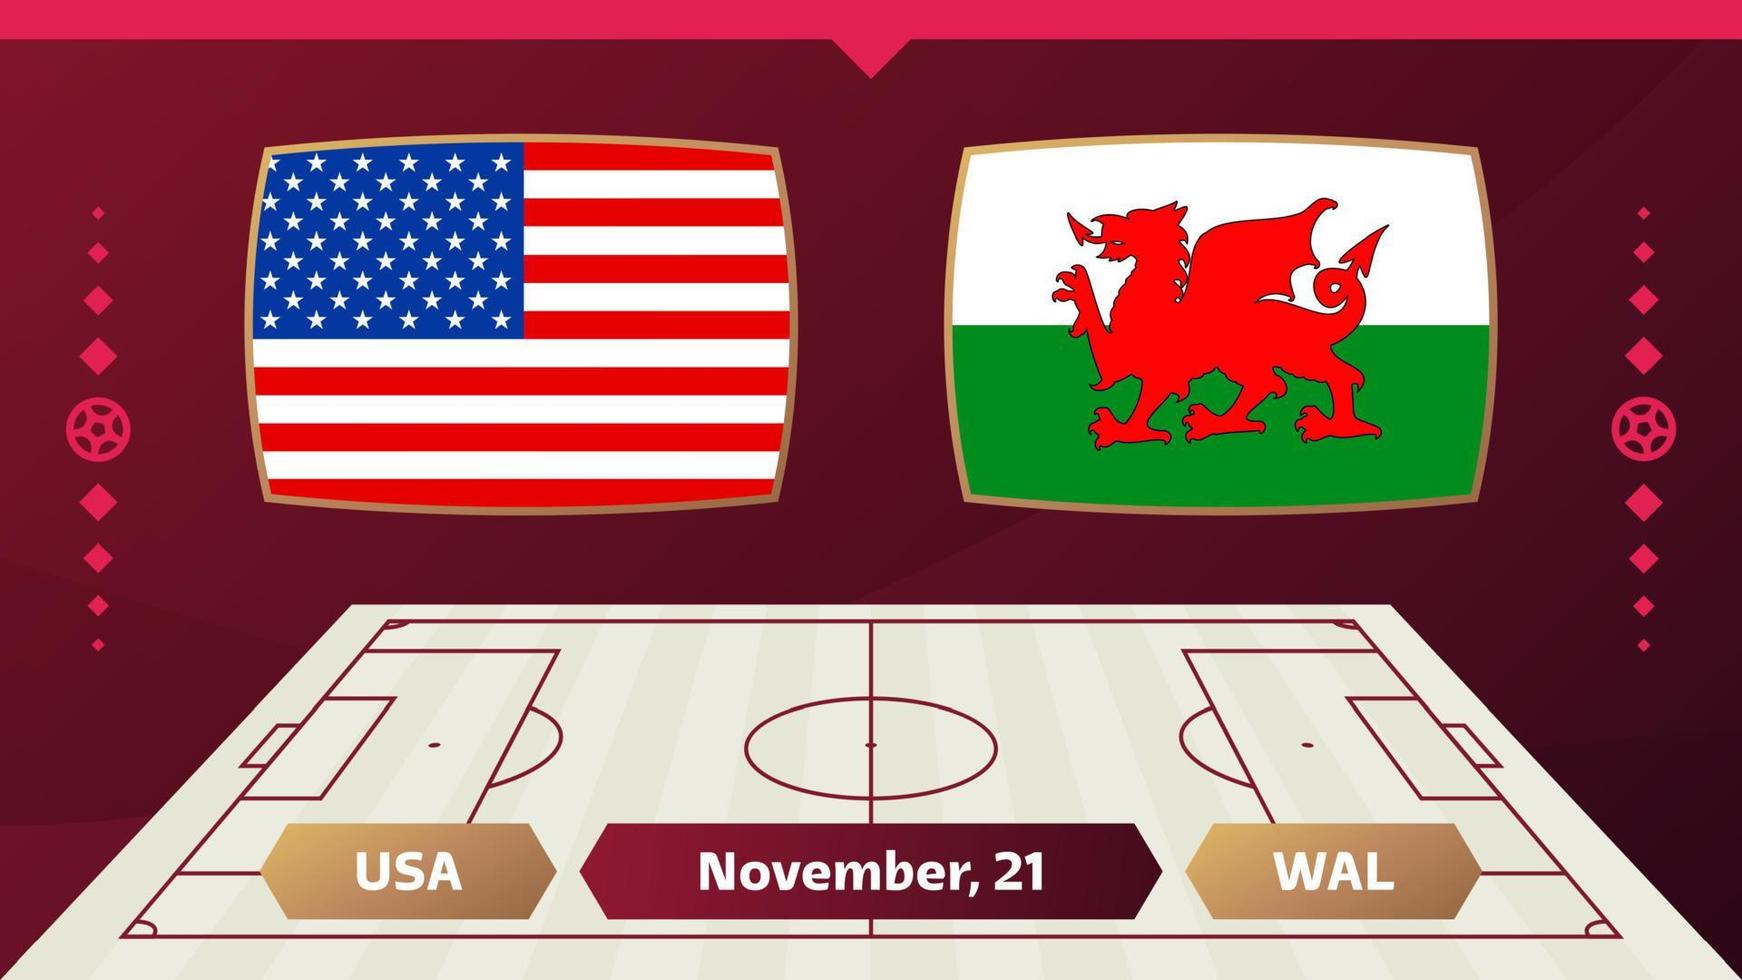 partita USA-Galles. partita del campionato mondiale di calcio 2022 contro le squadre sul campo di calcio. sfondo sportivo introduttivo, poster finale della competizione del campionato, illustrazione vettoriale in stile piatto